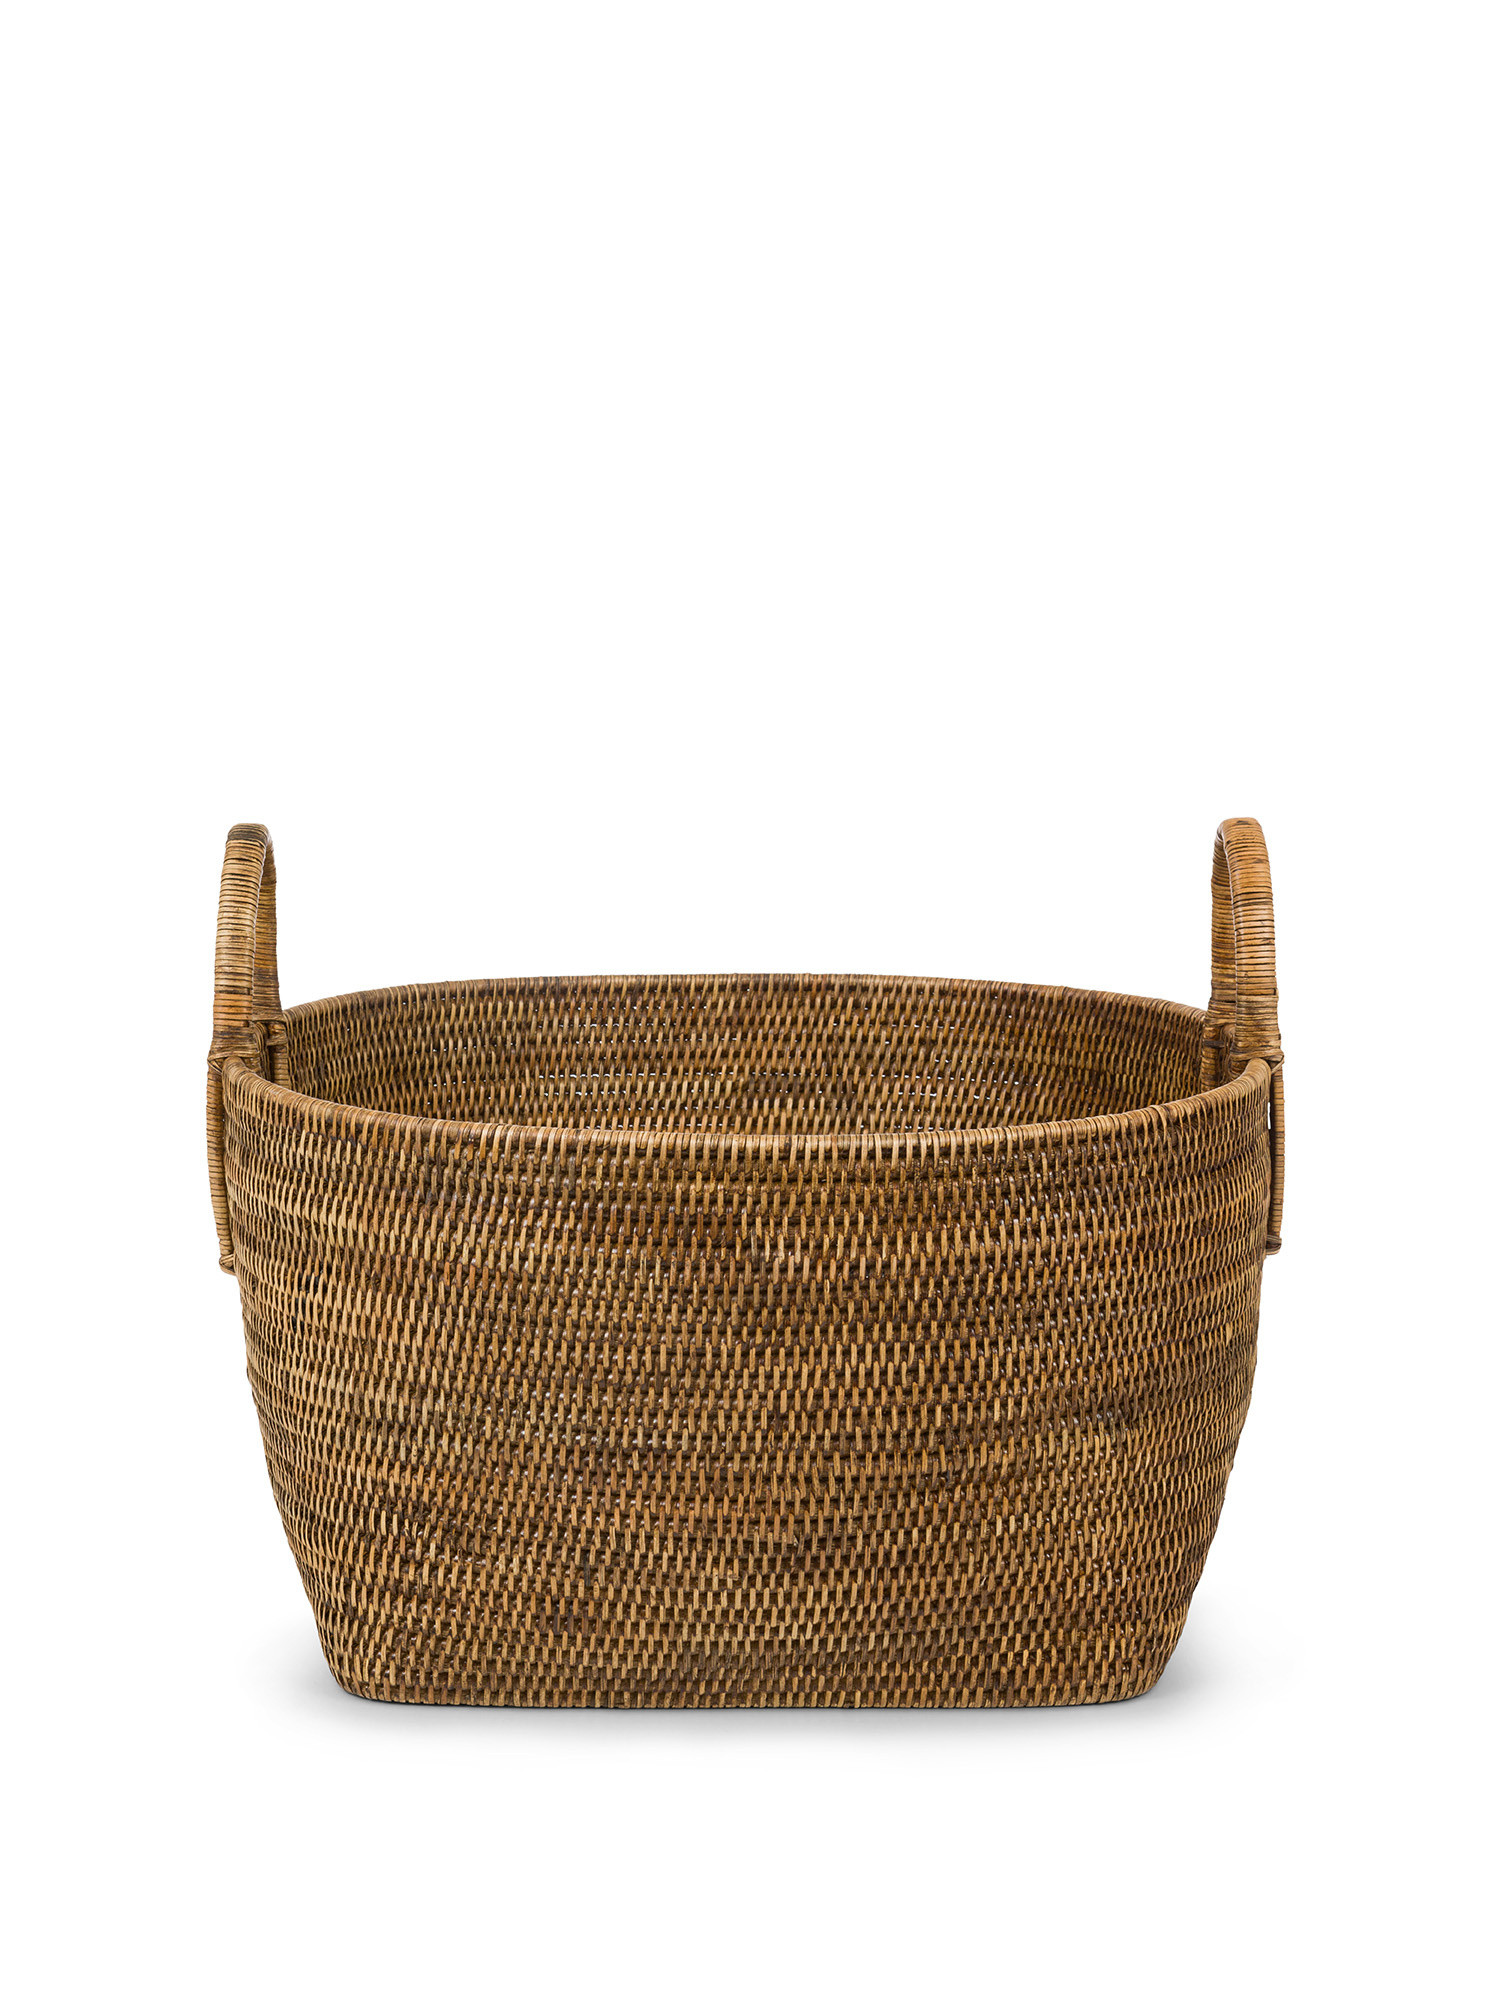 Handmade jute basket, Natural, large image number 0